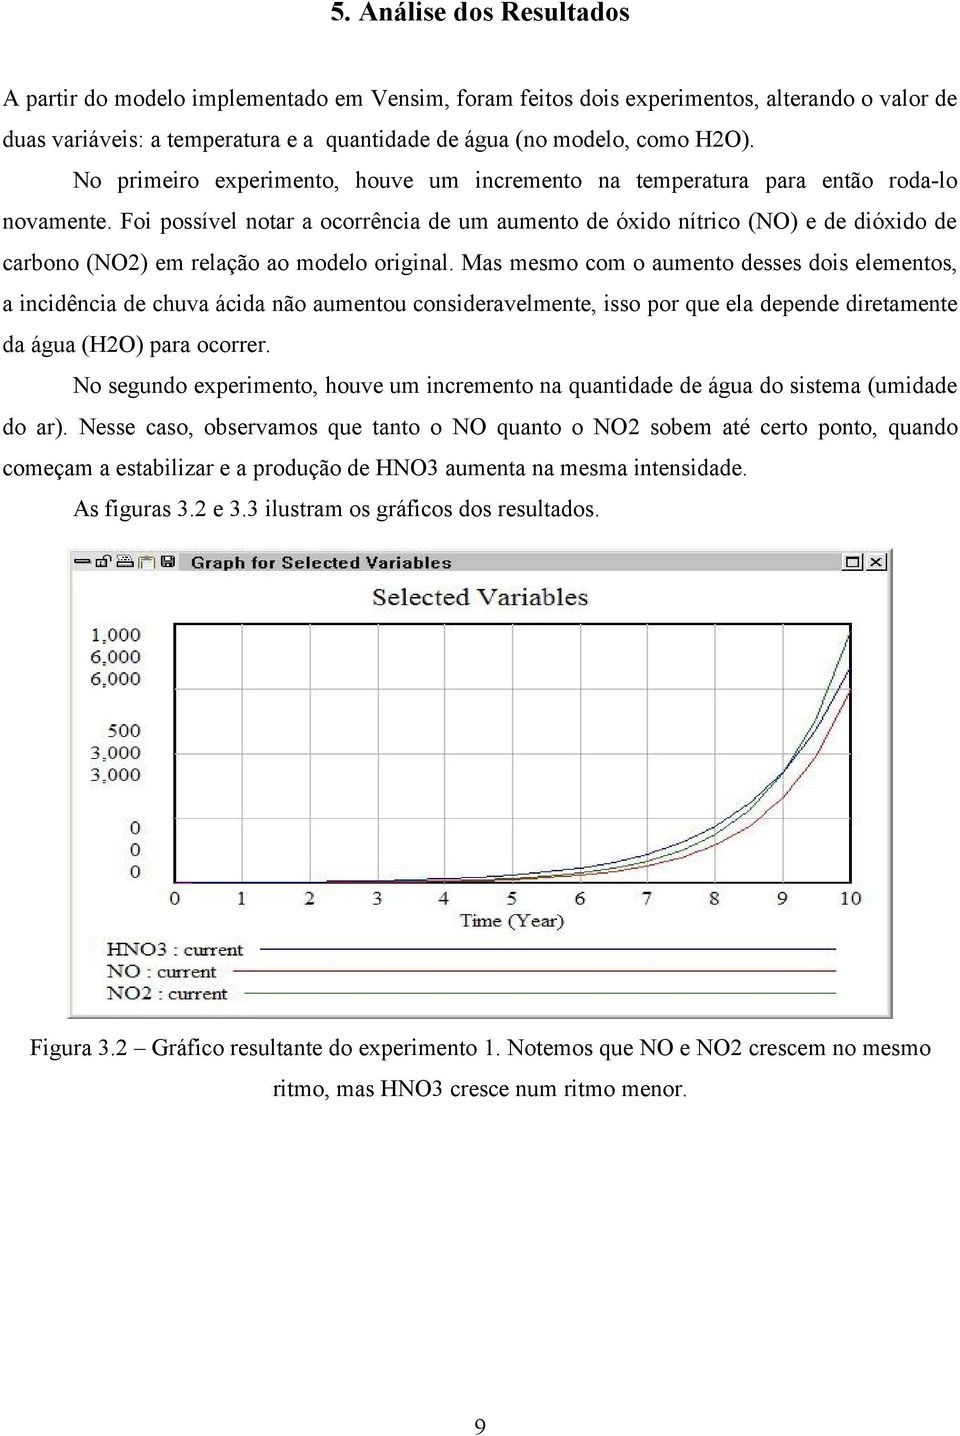 Foi possível notar a ocorrência de um aumento de óxido nítrico (NO) e de dióxido de carbono (NO2) em relação ao modelo original.